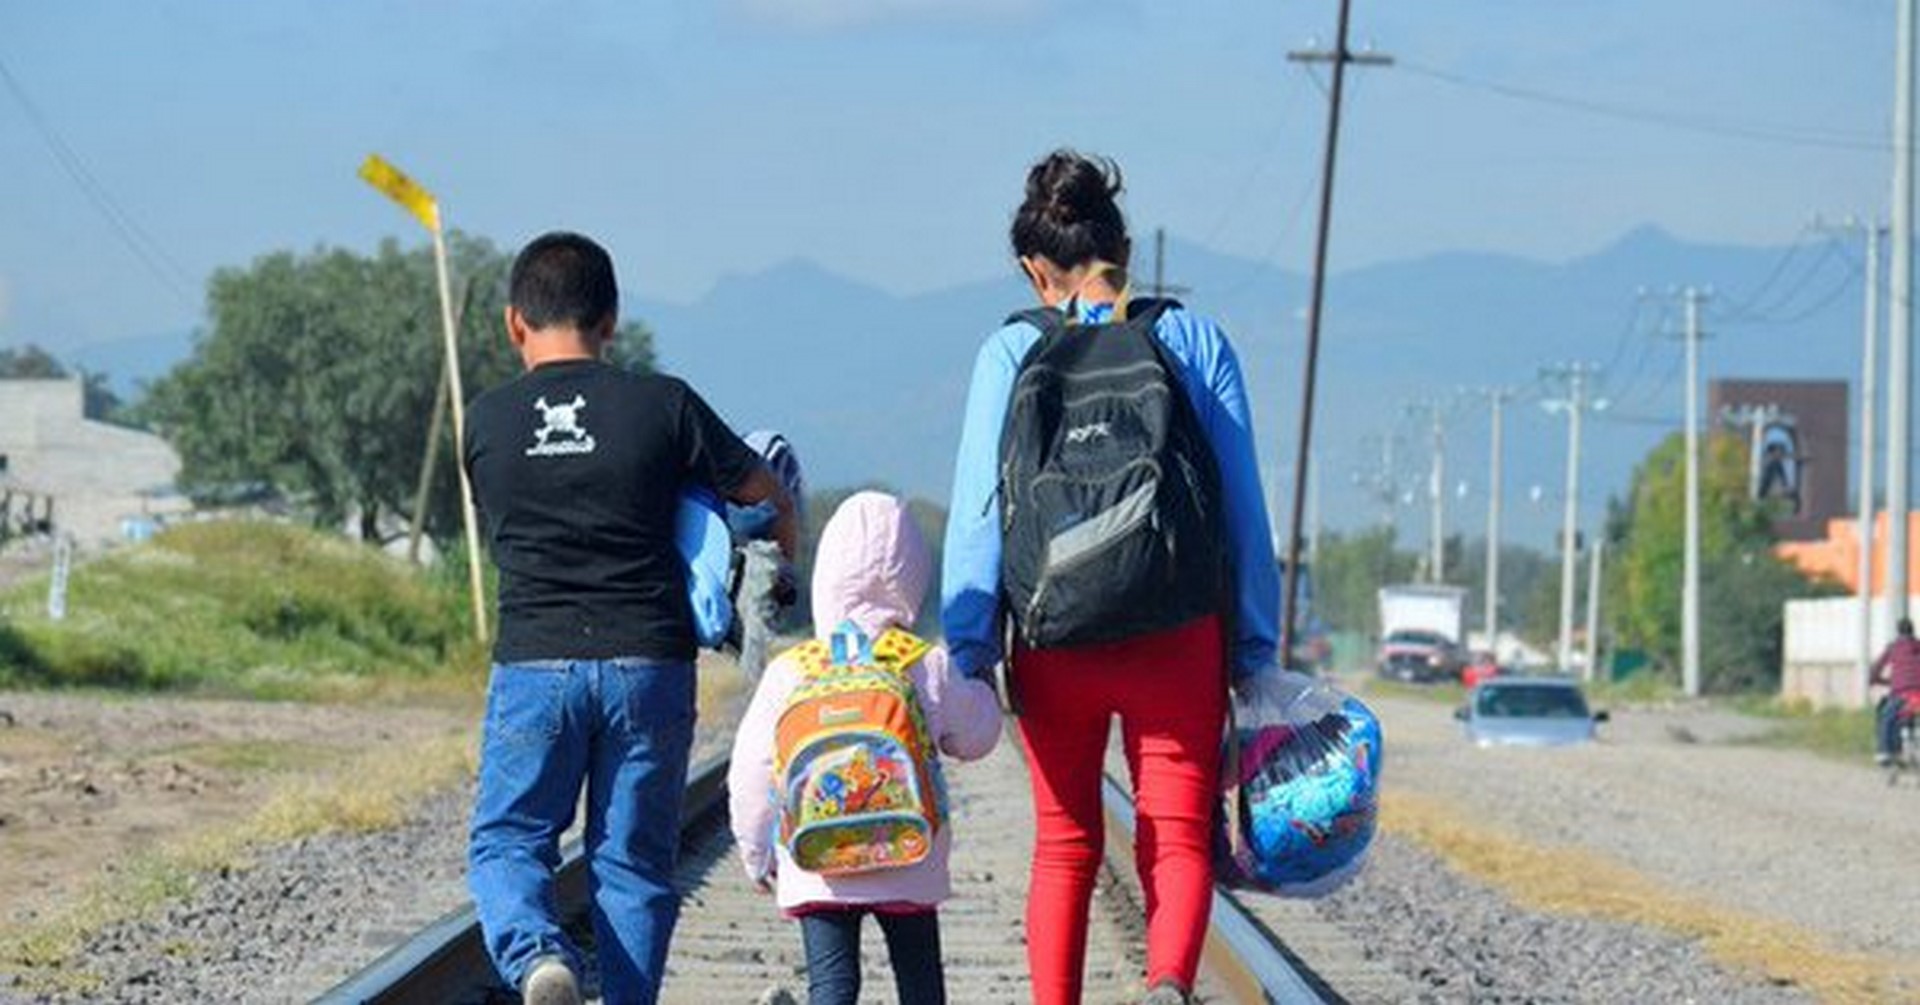 Extranjeros, sin posibilidad de tramitar refugio en México